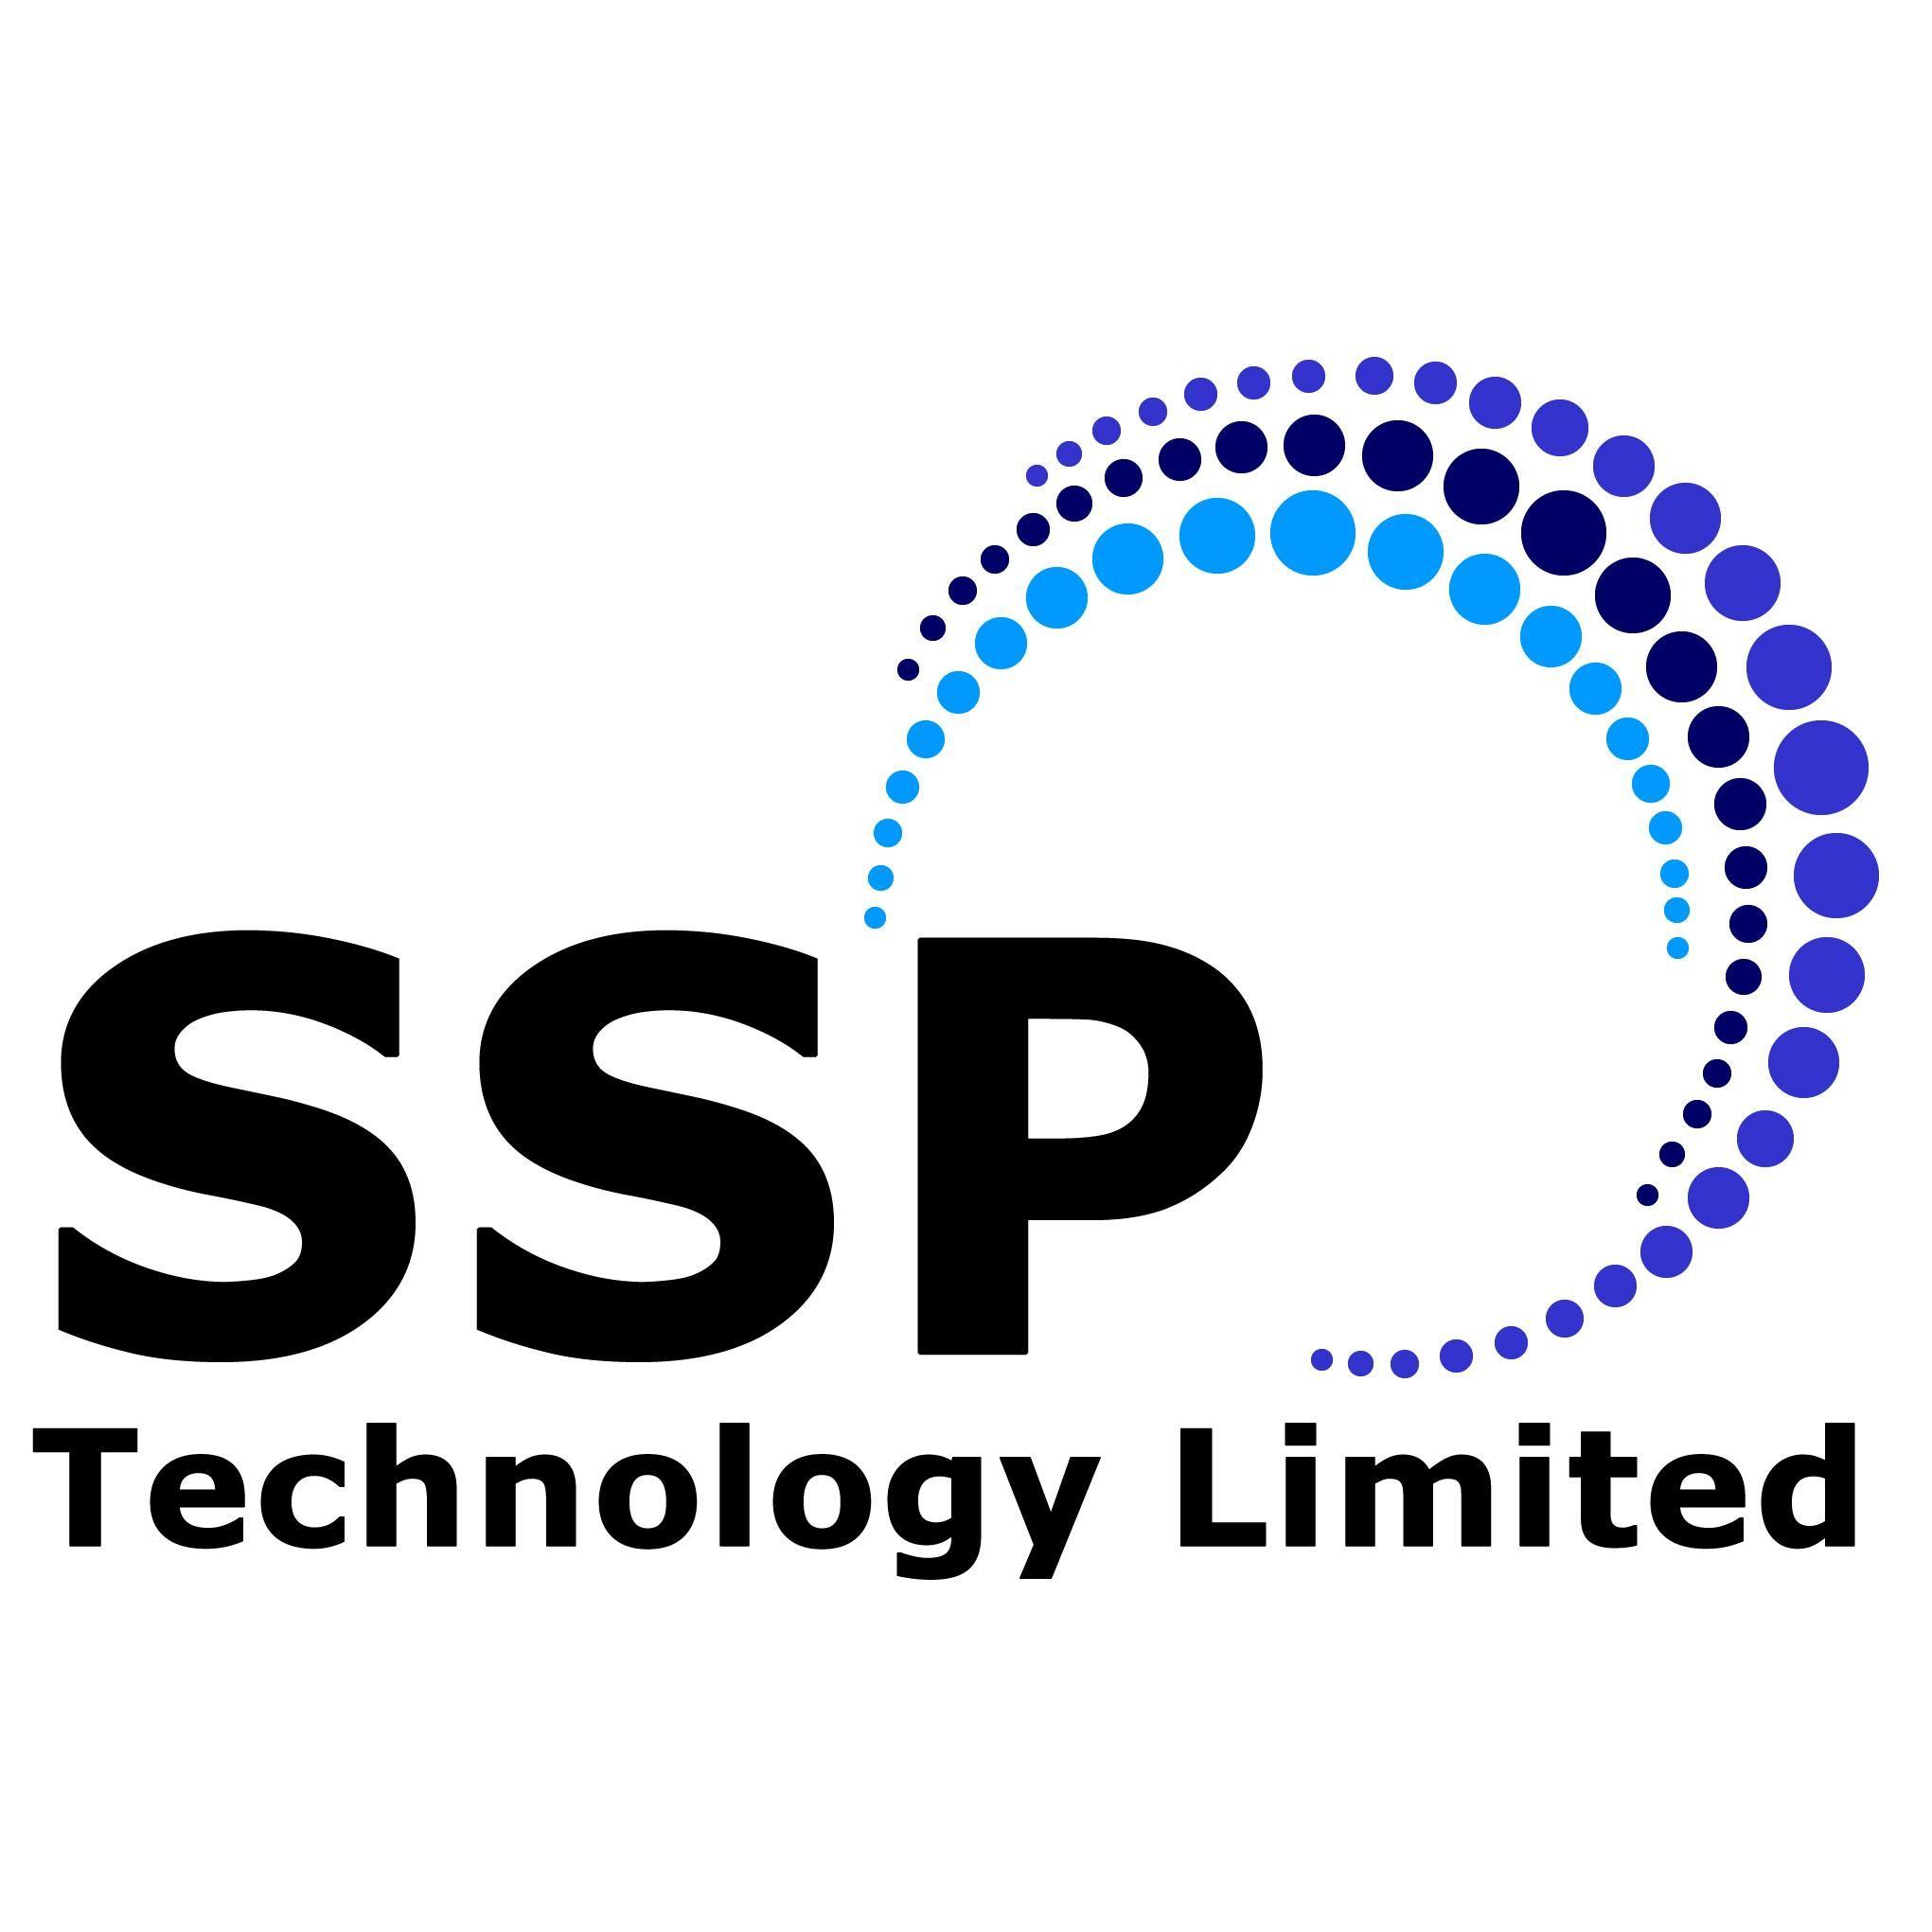 SSP Logo - SSP TECHNOLOGY LTD. MTA Technologies Association